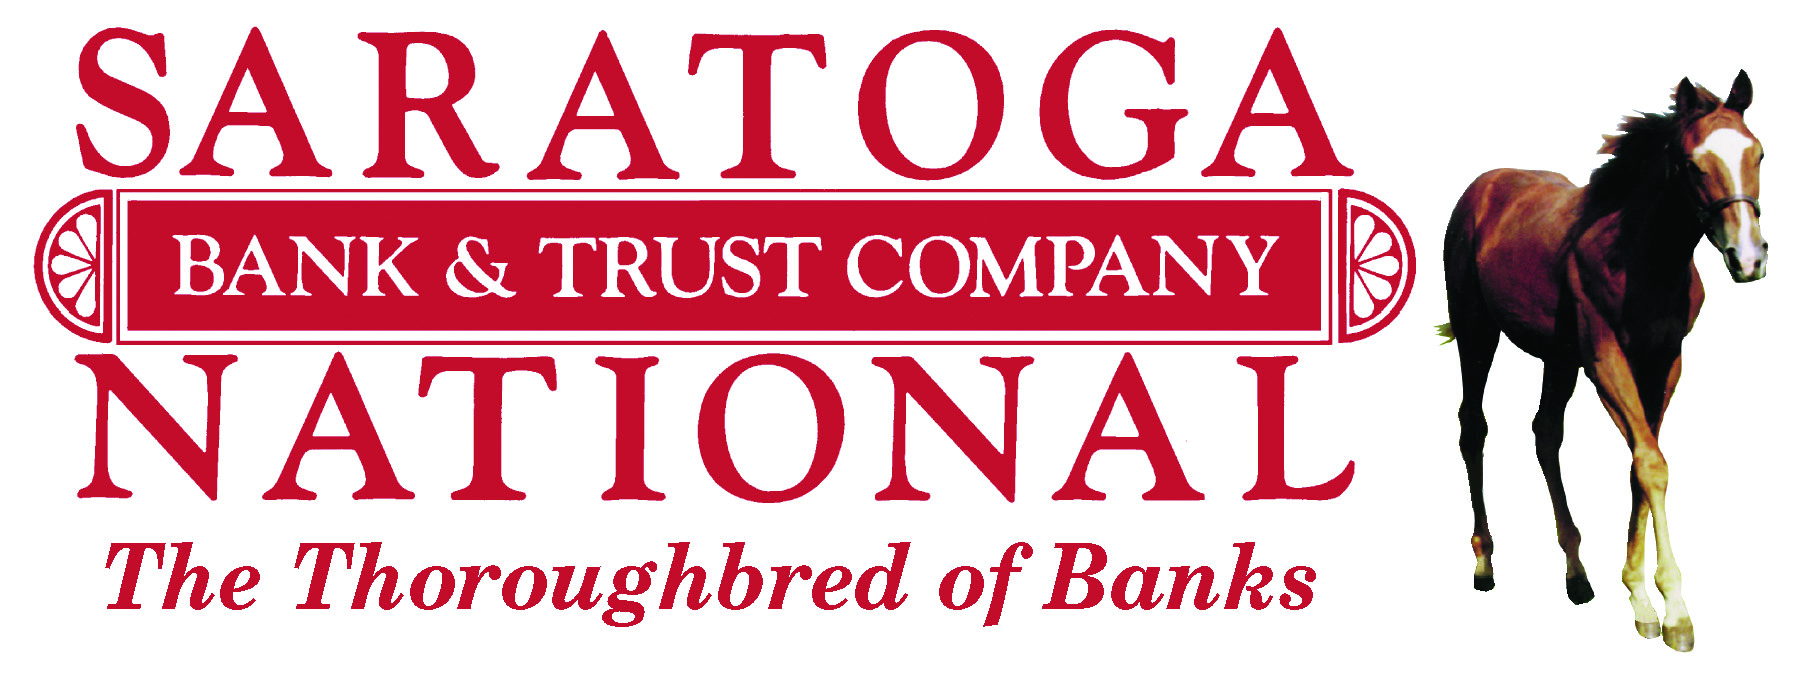 Saratoga National Bank